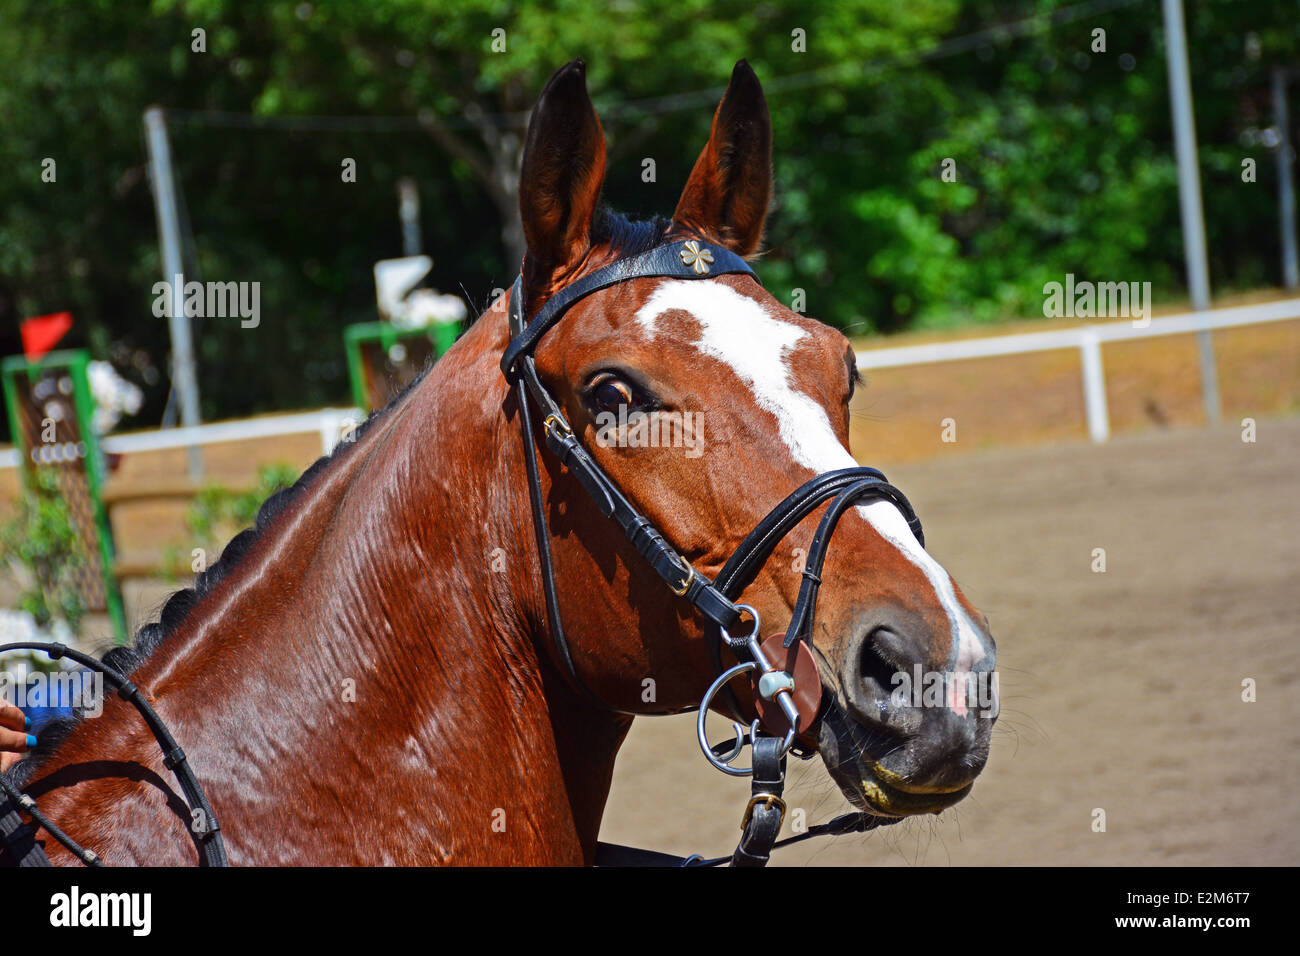 Racehorse portrait Stock Photo